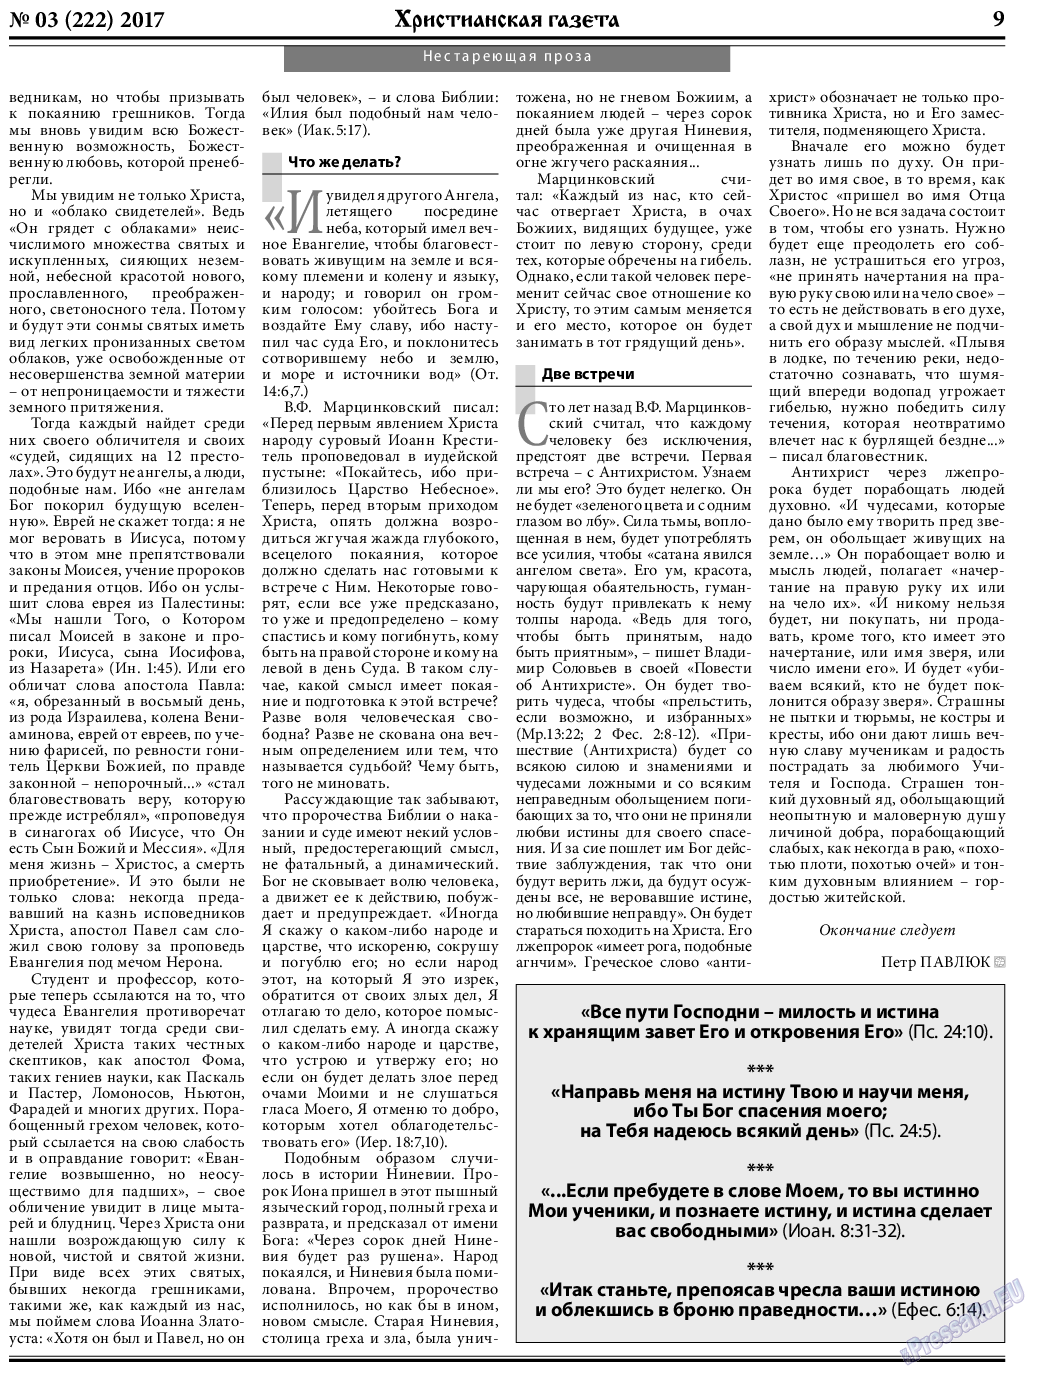 Христианская газета, газета. 2017 №3 стр.9